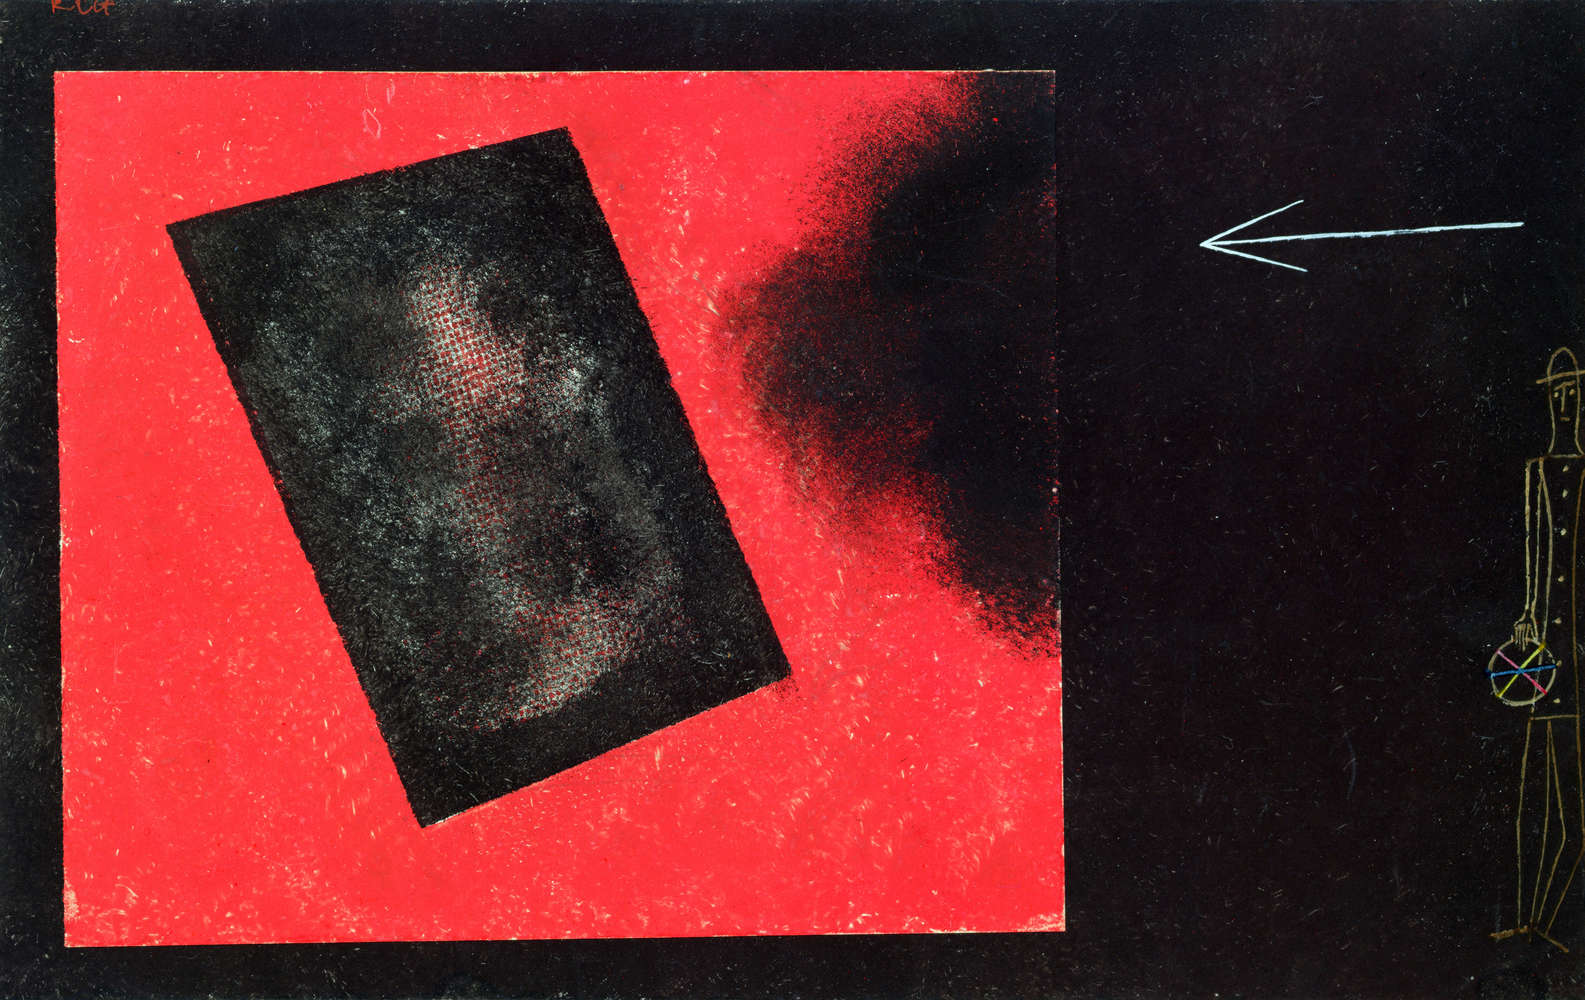             Papier peint panoramique "Nouveau jeu commence" de Paul Klee
        